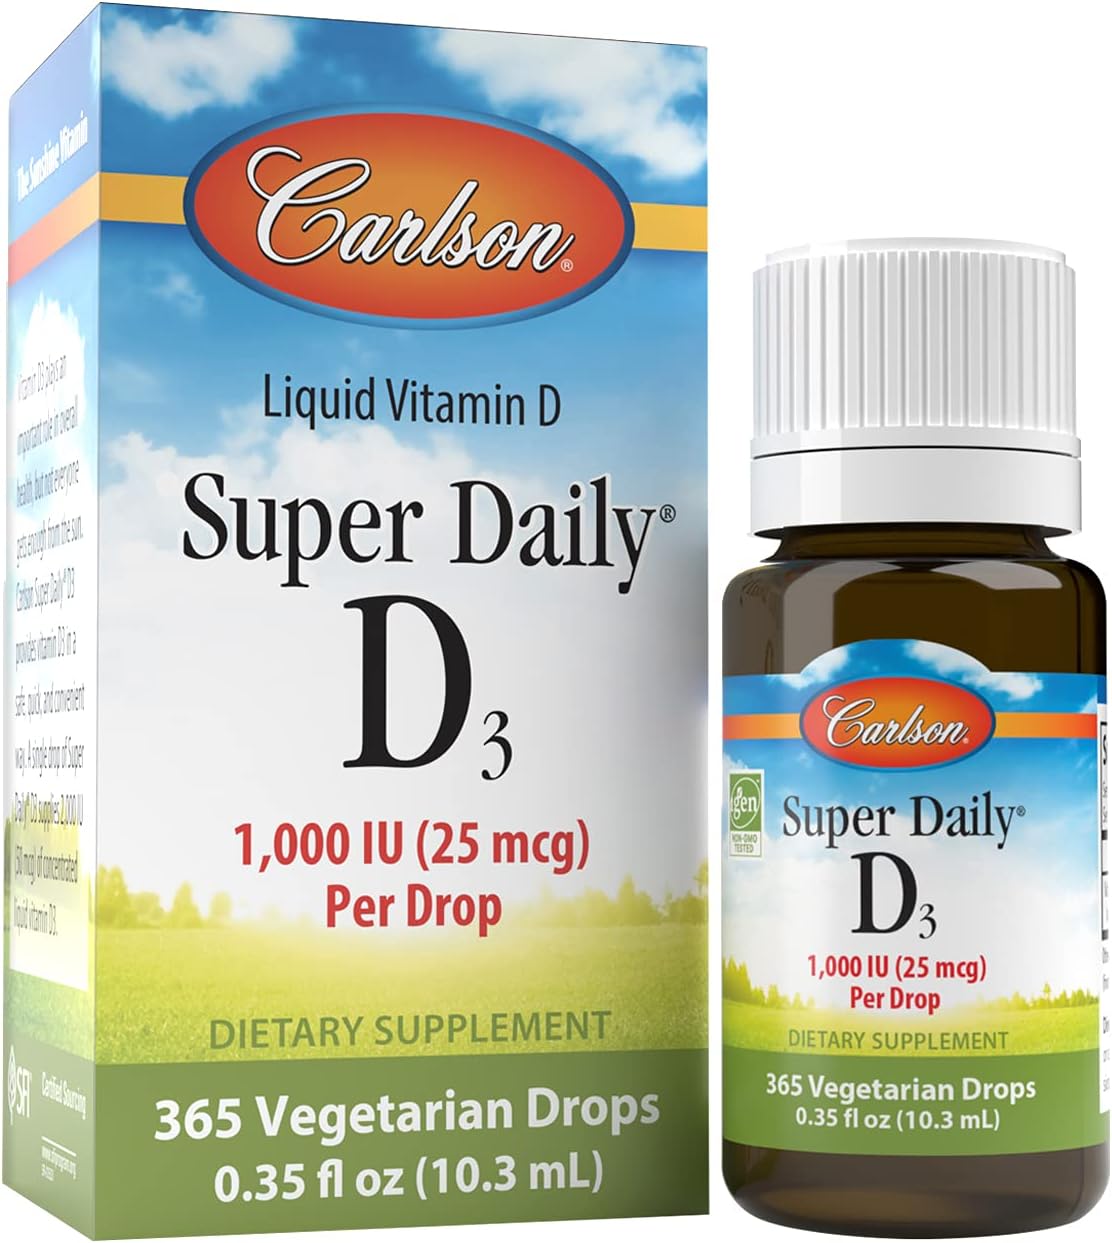 Carlson - Super Daily D3, Vitamin D Drops, 1,000 IU (25 mcg) per Drop, 1-Year Supply, Vitamin D3 Liquid, Heart  Immune Health, Vegetarian, Liquid Vitamin D3 Drops, Unflavored, 365 Drops